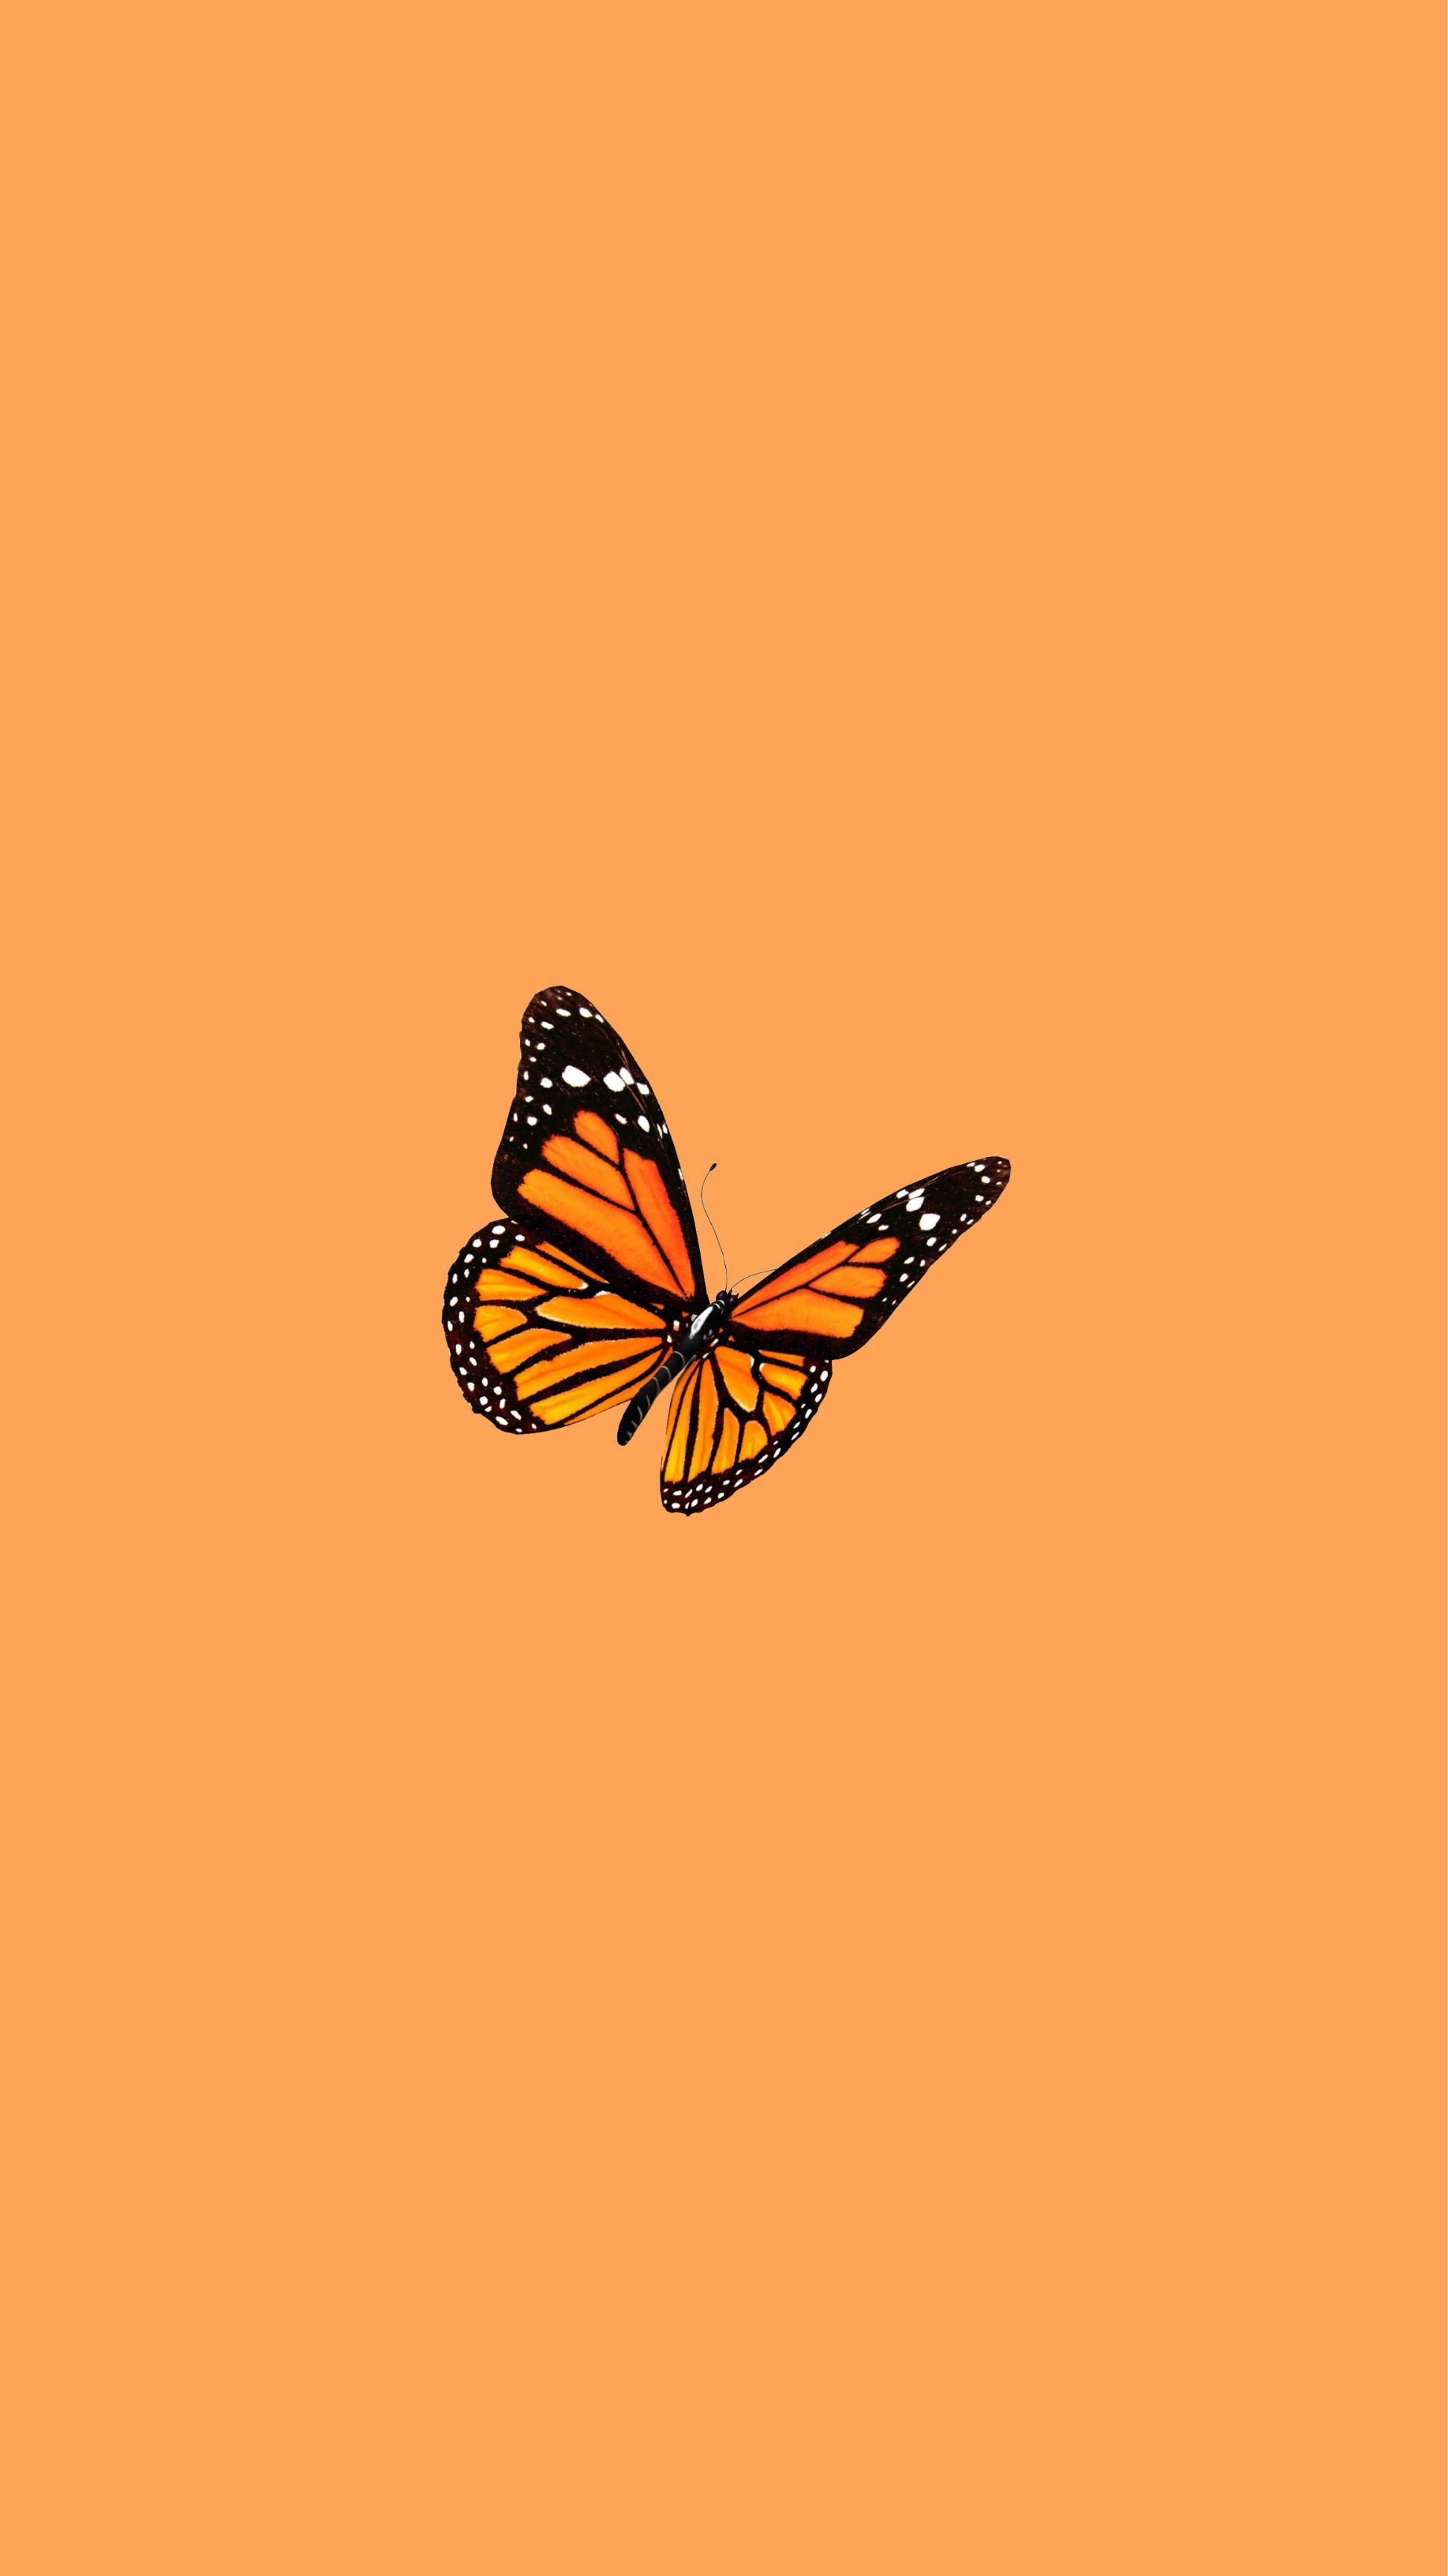 A butterfly on an orange background - Orange, butterfly, pastel orange